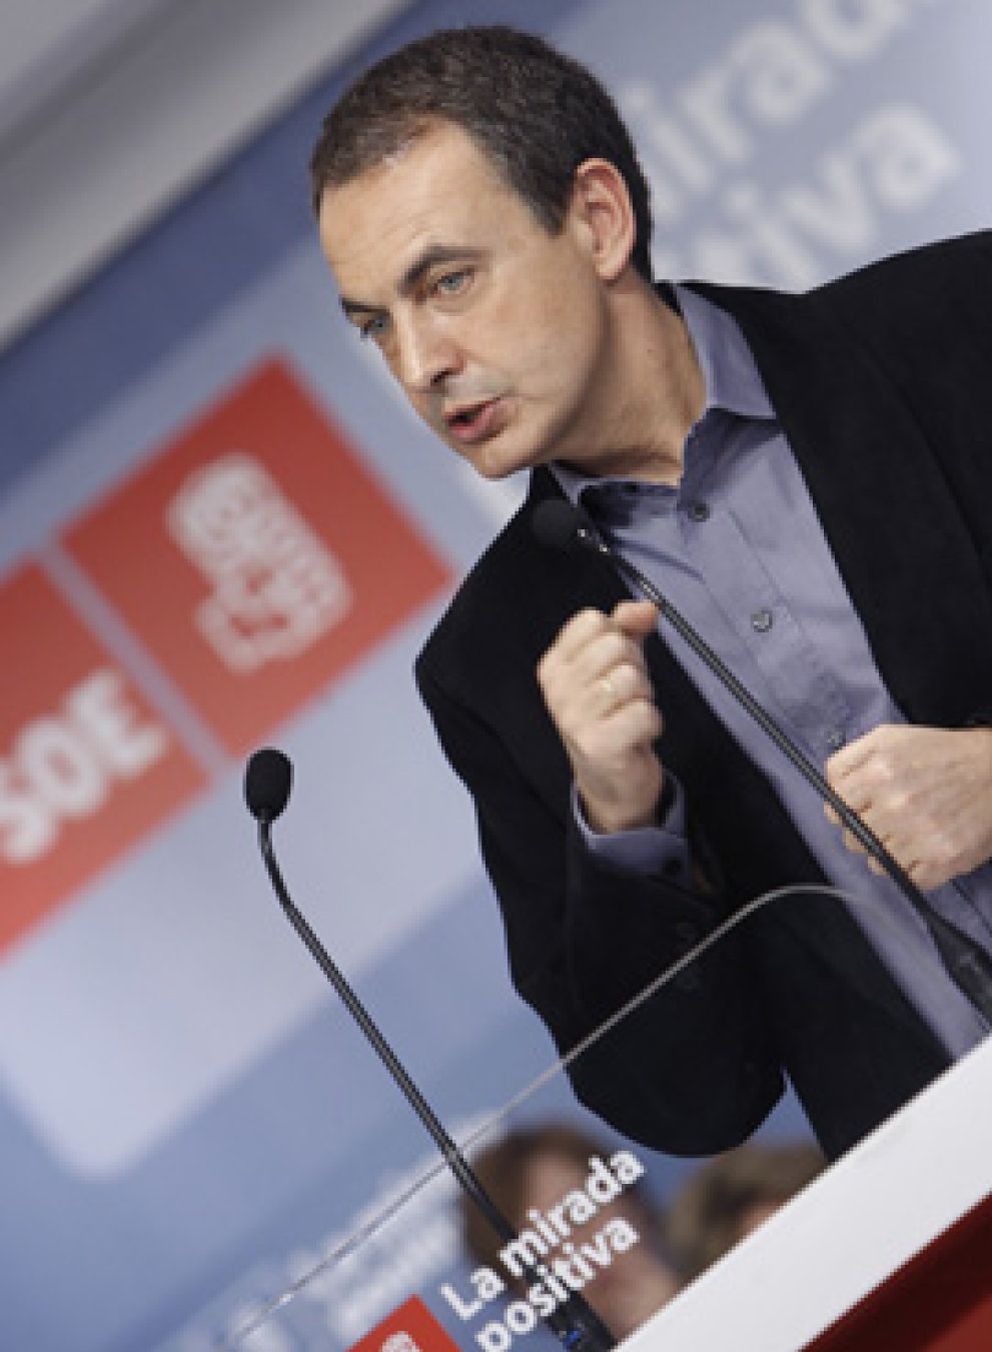 Foto: A Zapatero le pilla el ‘tsunami’ bursátil a seis semanas de las elecciones: "No hay que exagerar"